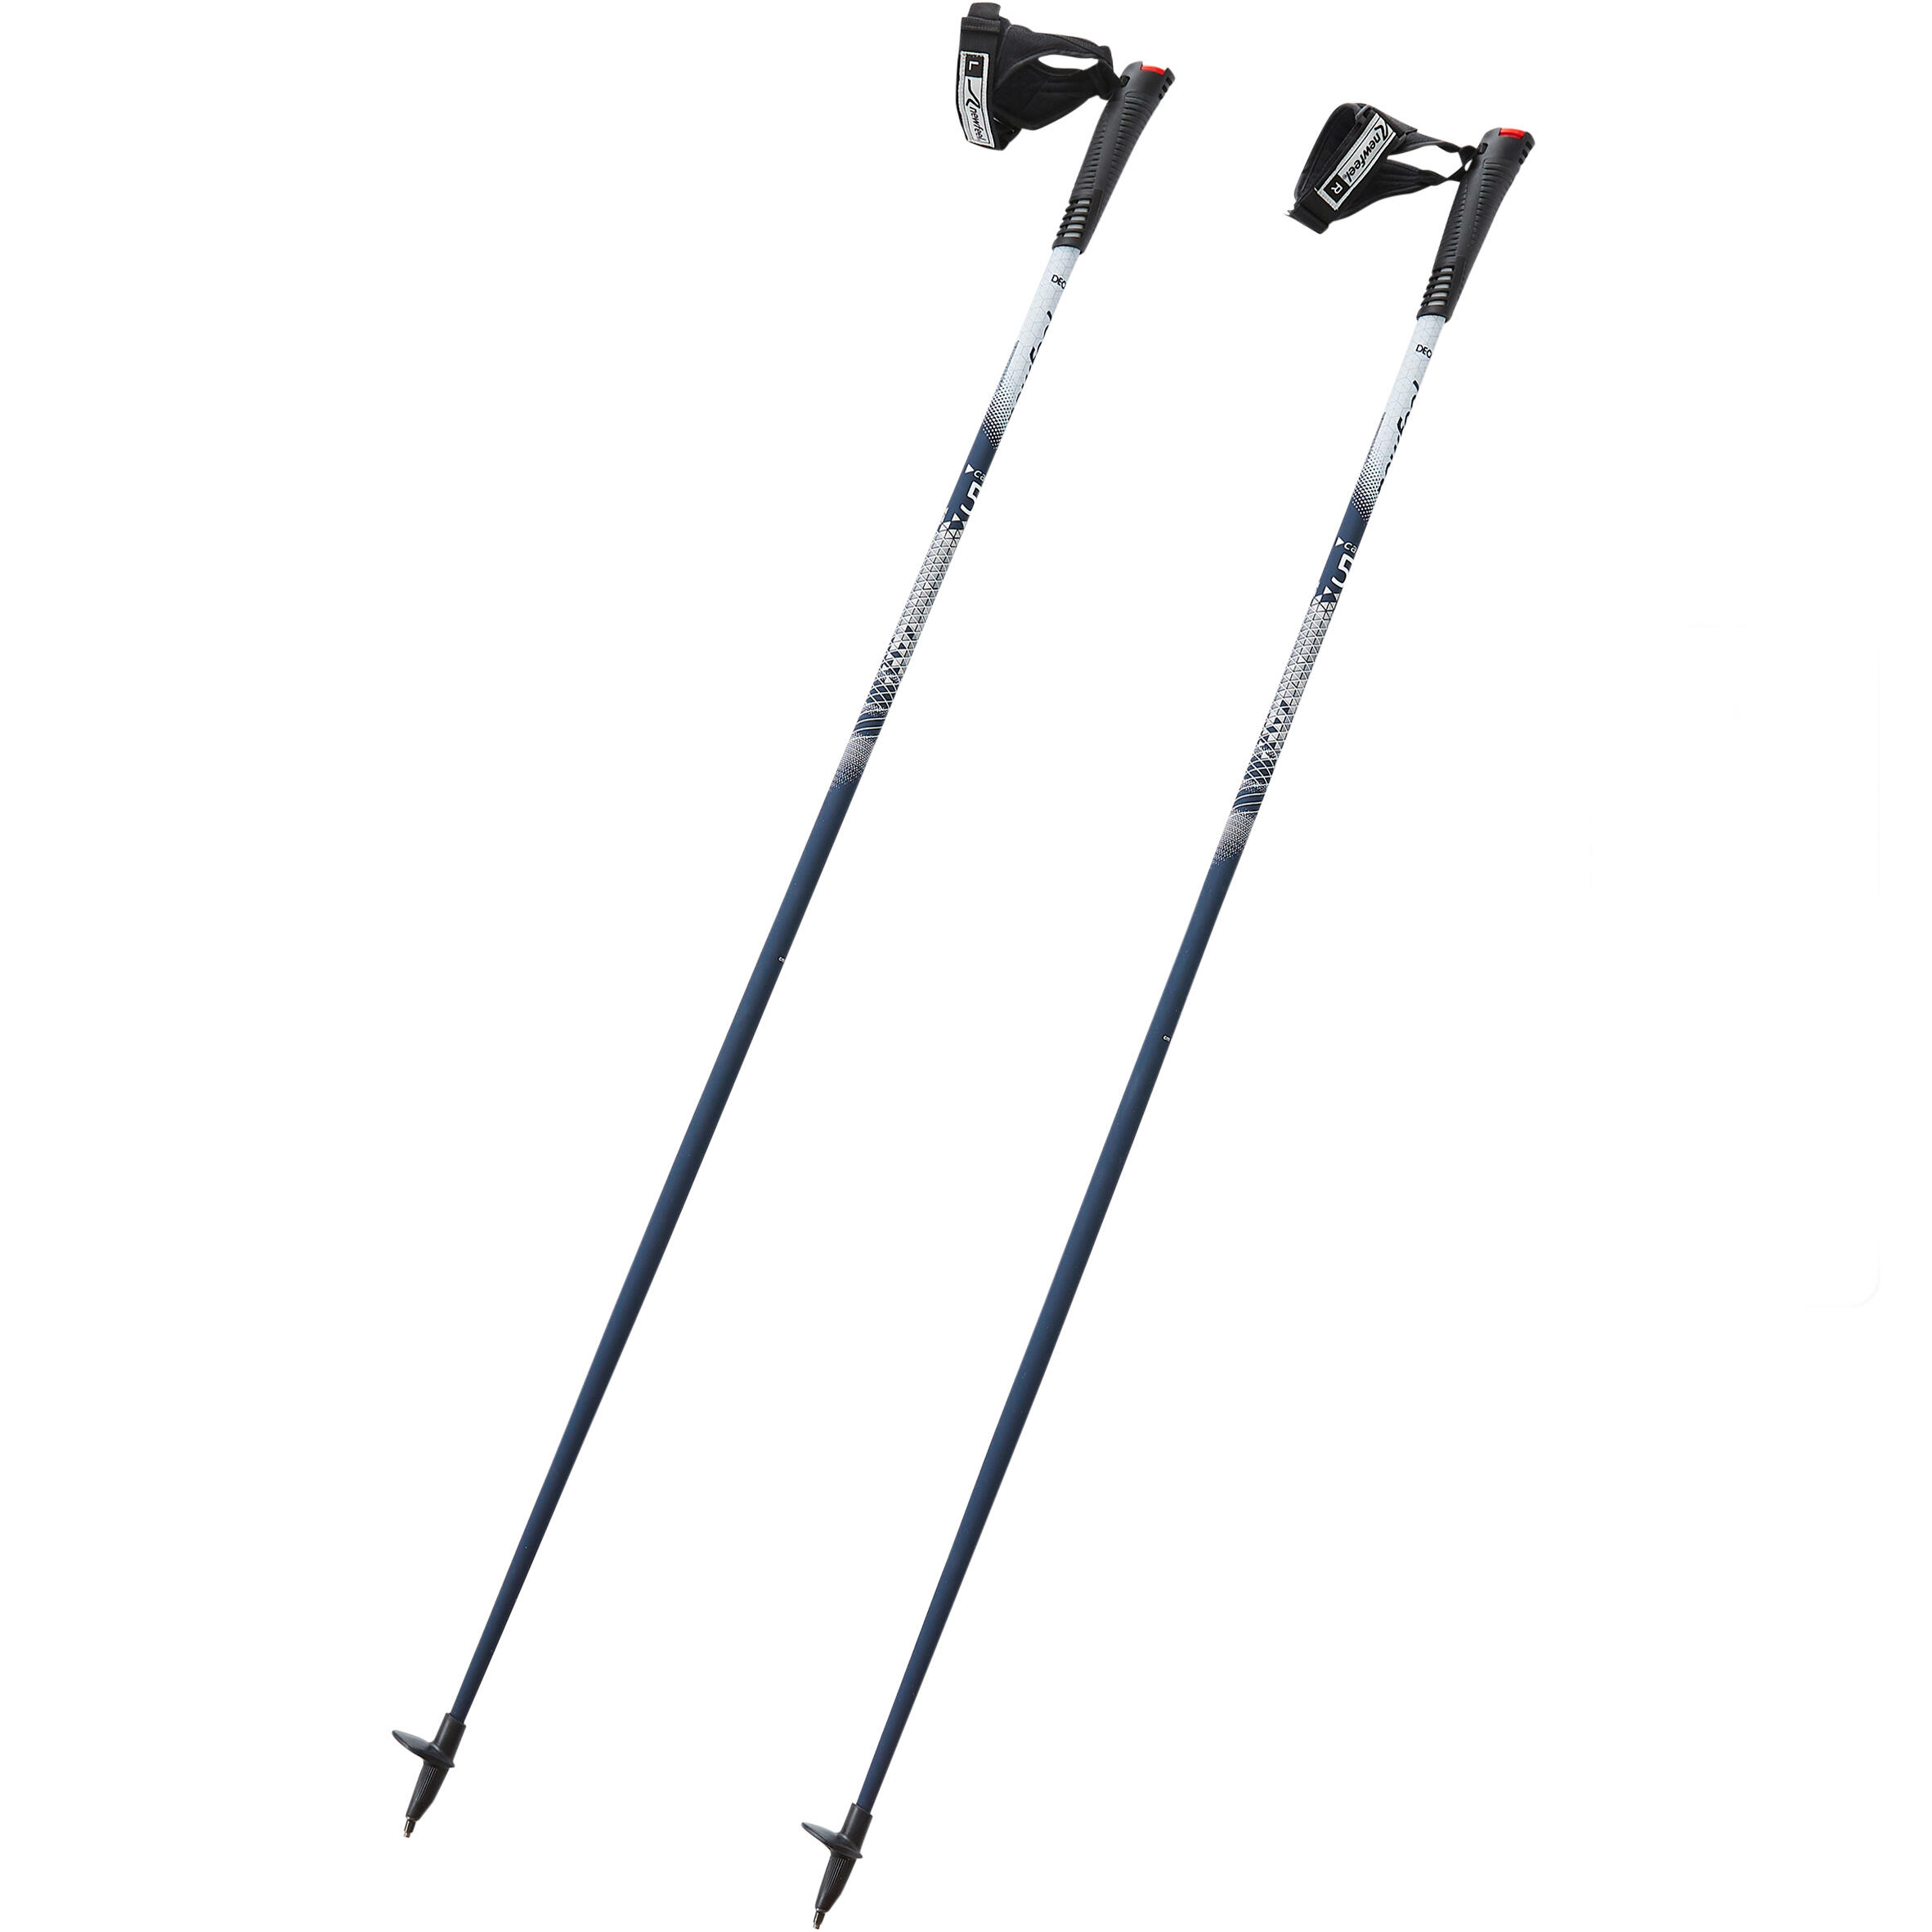 PW P500 Nordic walking poles - blue 1/10